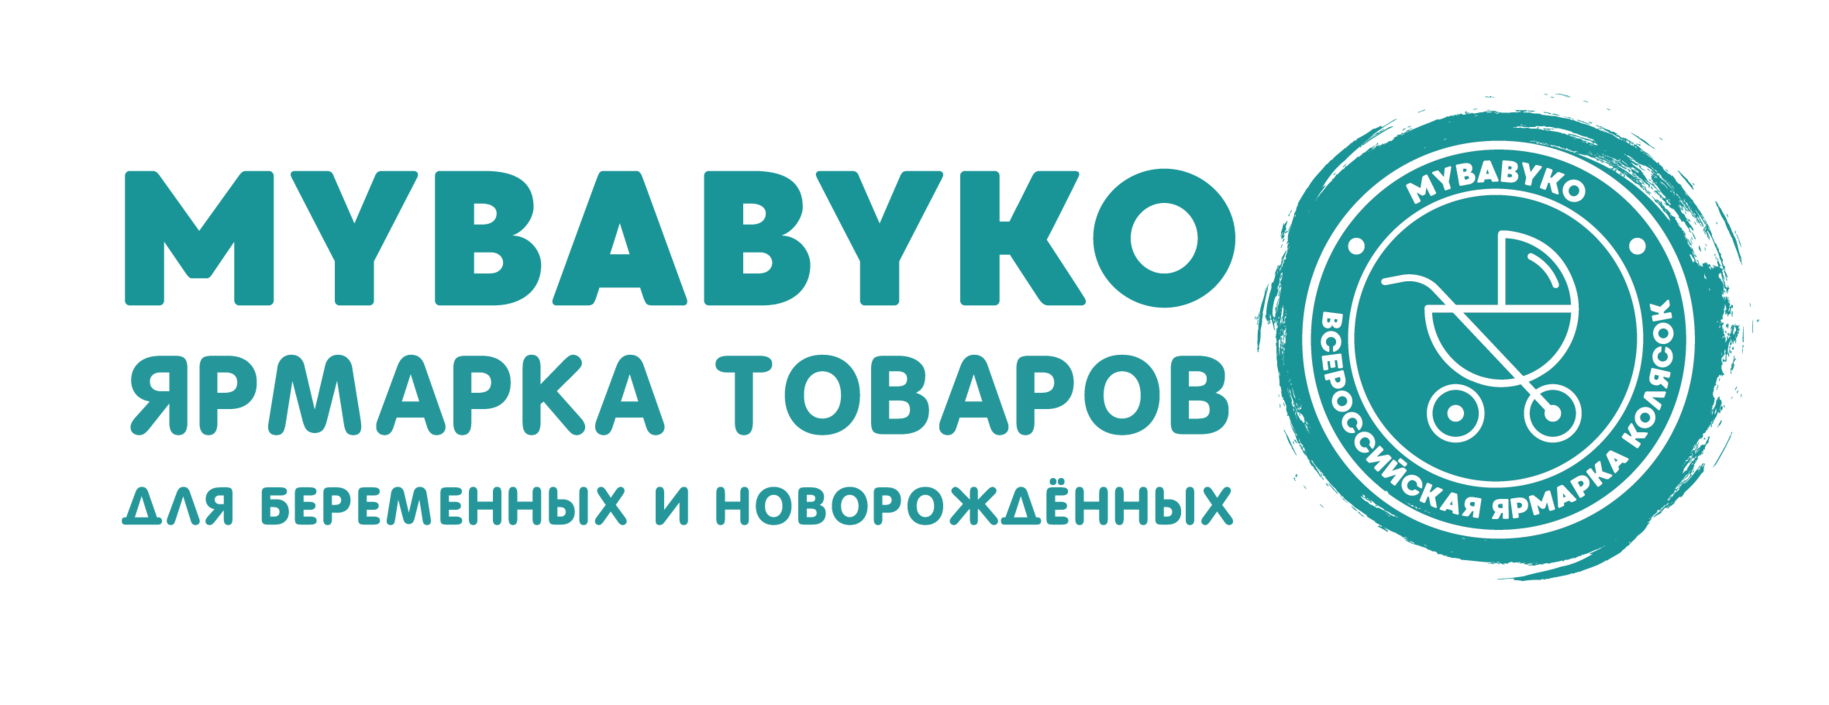 V Ярмарка товаров для беременных и новорожденных Mybabyko, Москва